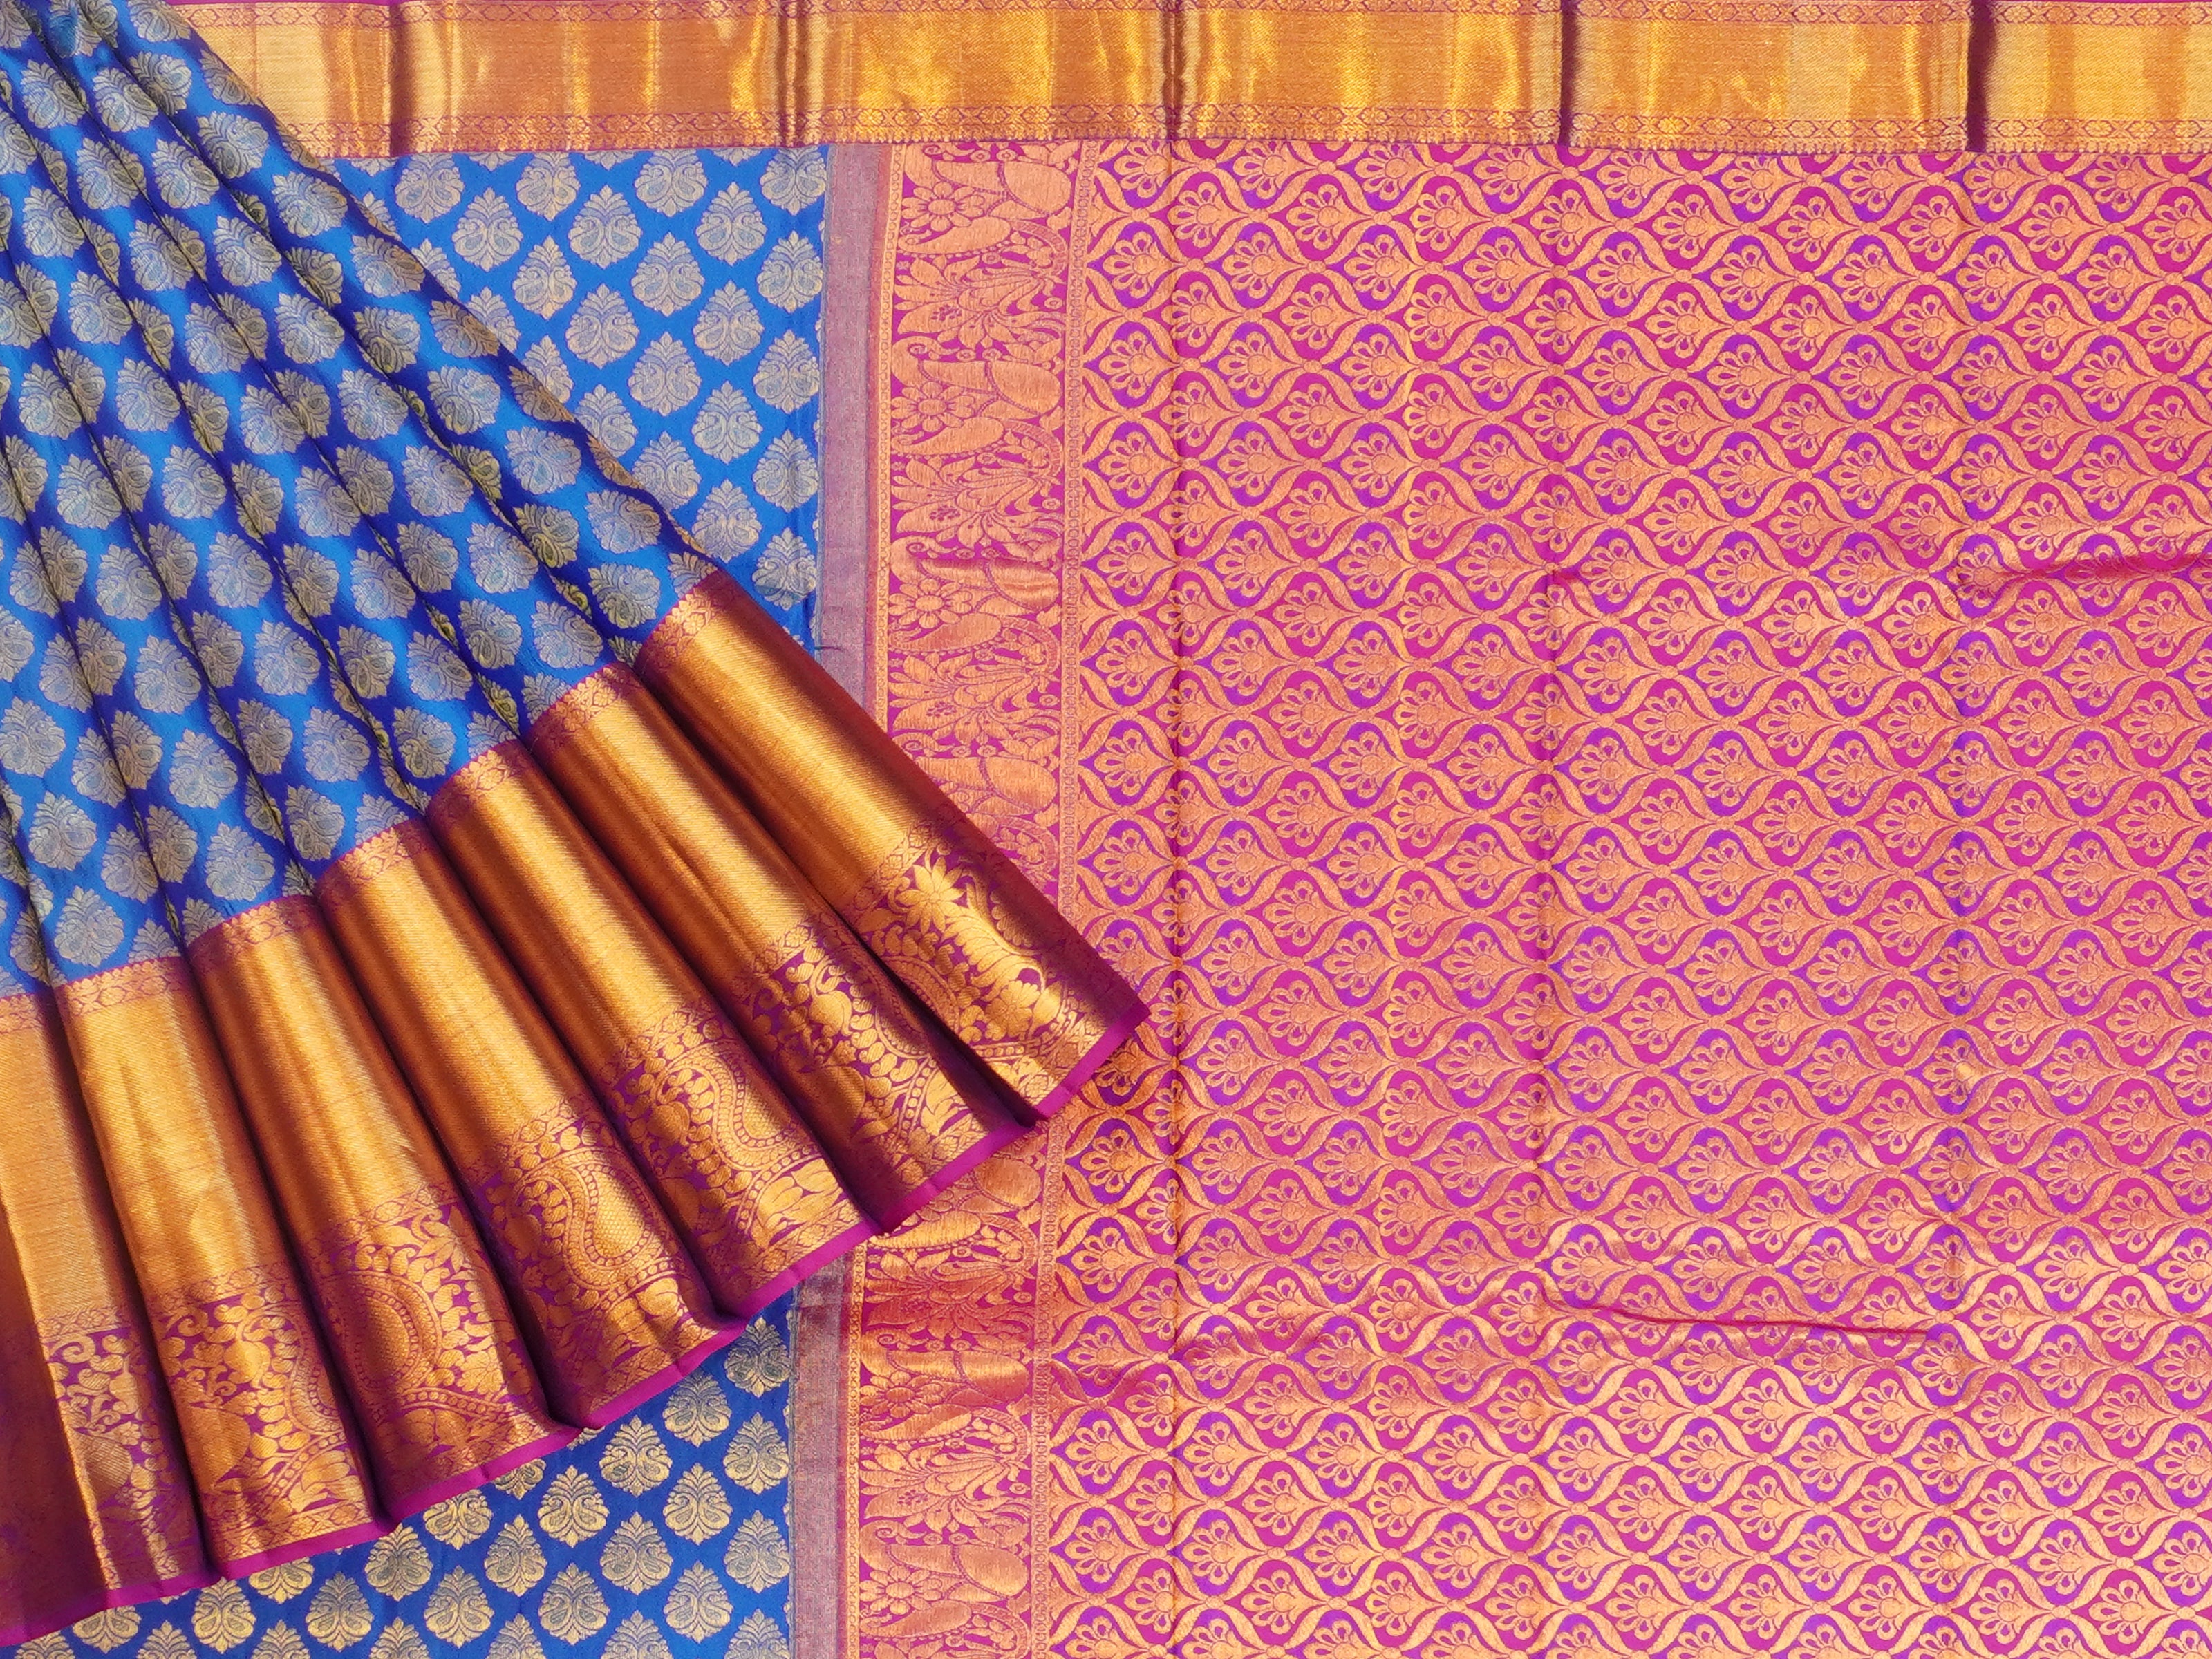 JSSB-504 | Blue & Pink Kanchi Pattu Saree